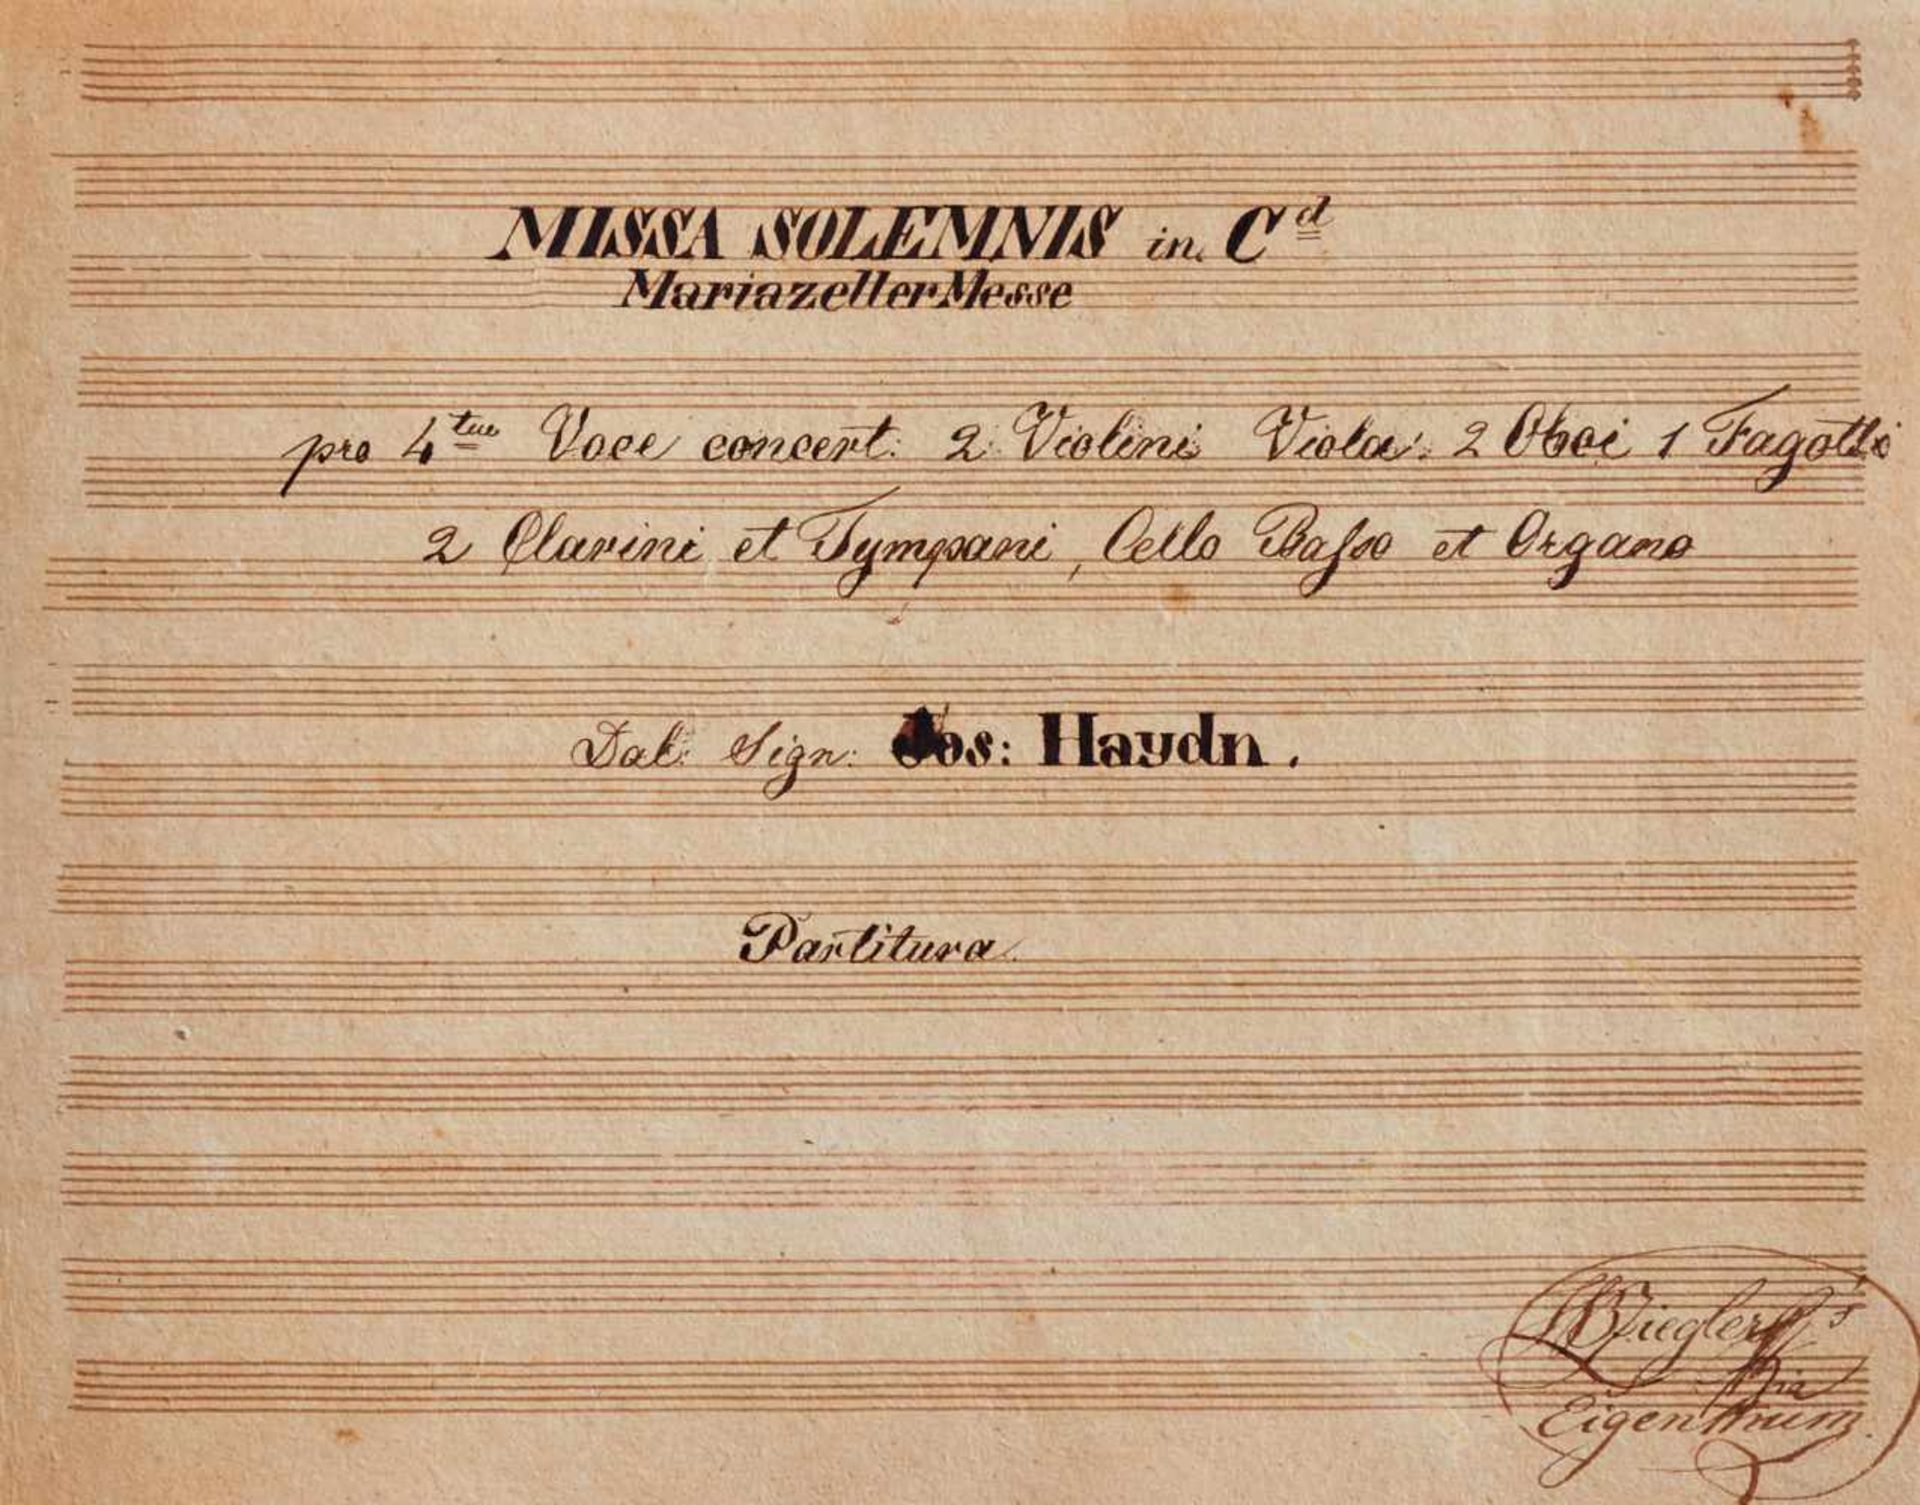 Haydn "Missa solemnis in C d[ur] Mariazeller Messe ... dal Sign. Jos. Haydn.Partitura." Deutsche - Bild 2 aus 3